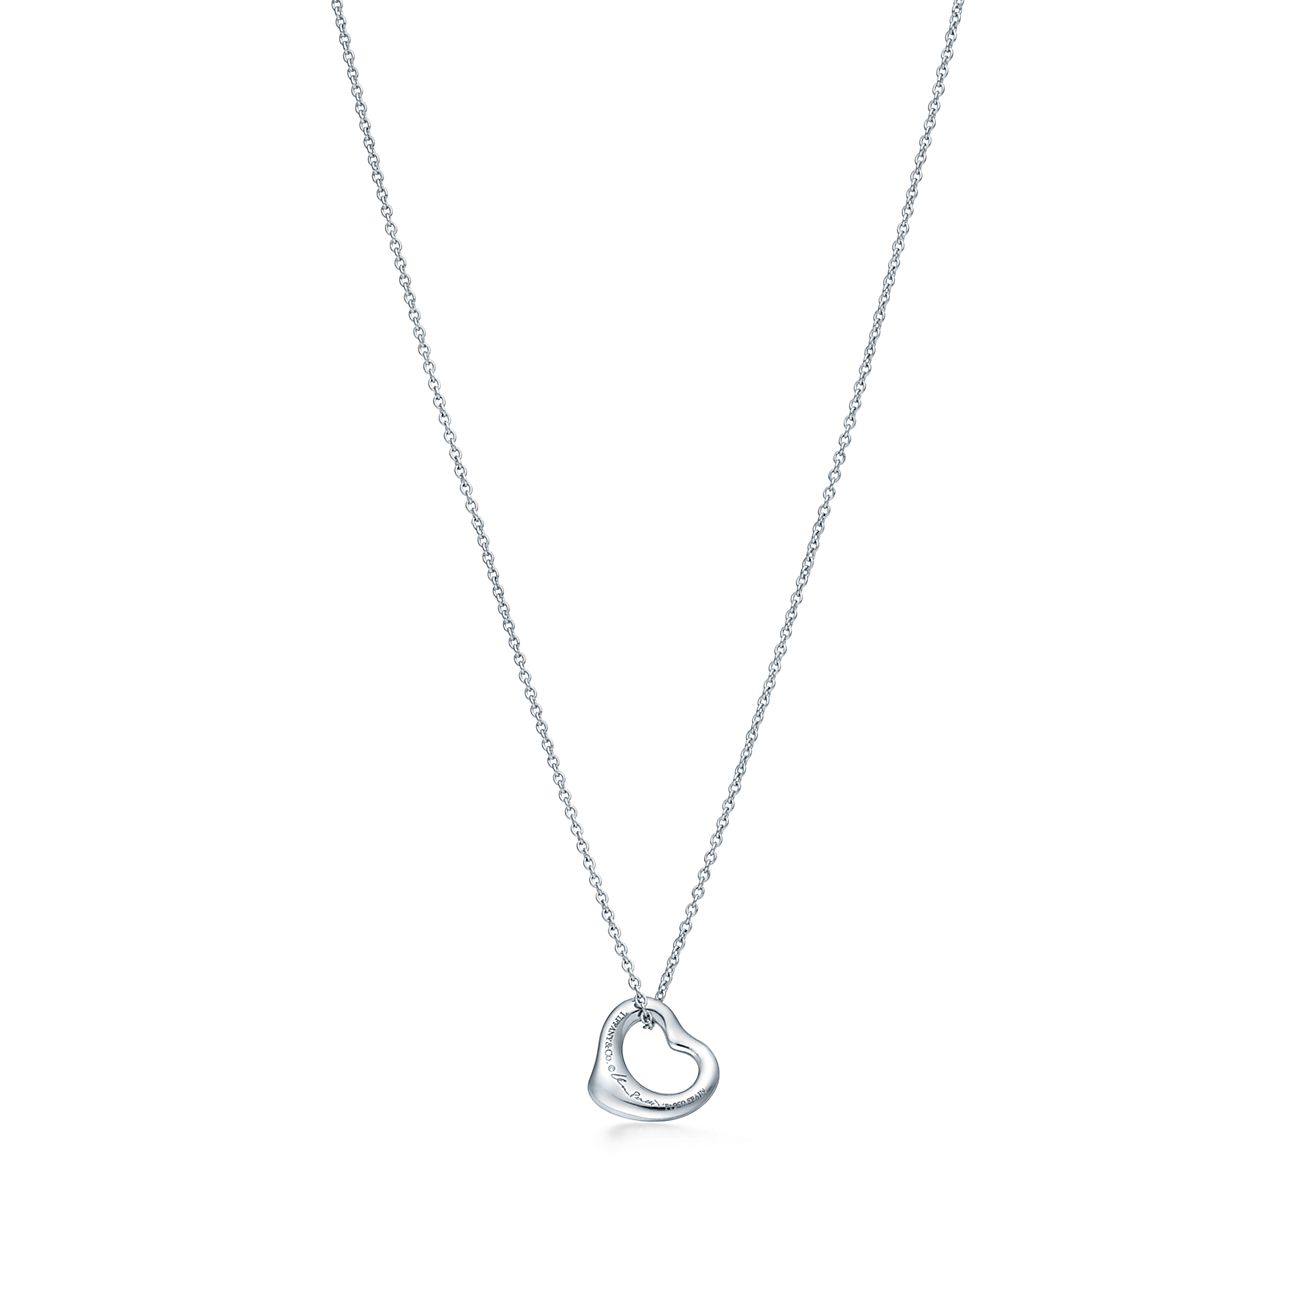 Elsa Peretti® Open Heart pendant in platinum with diamonds, 11 mm